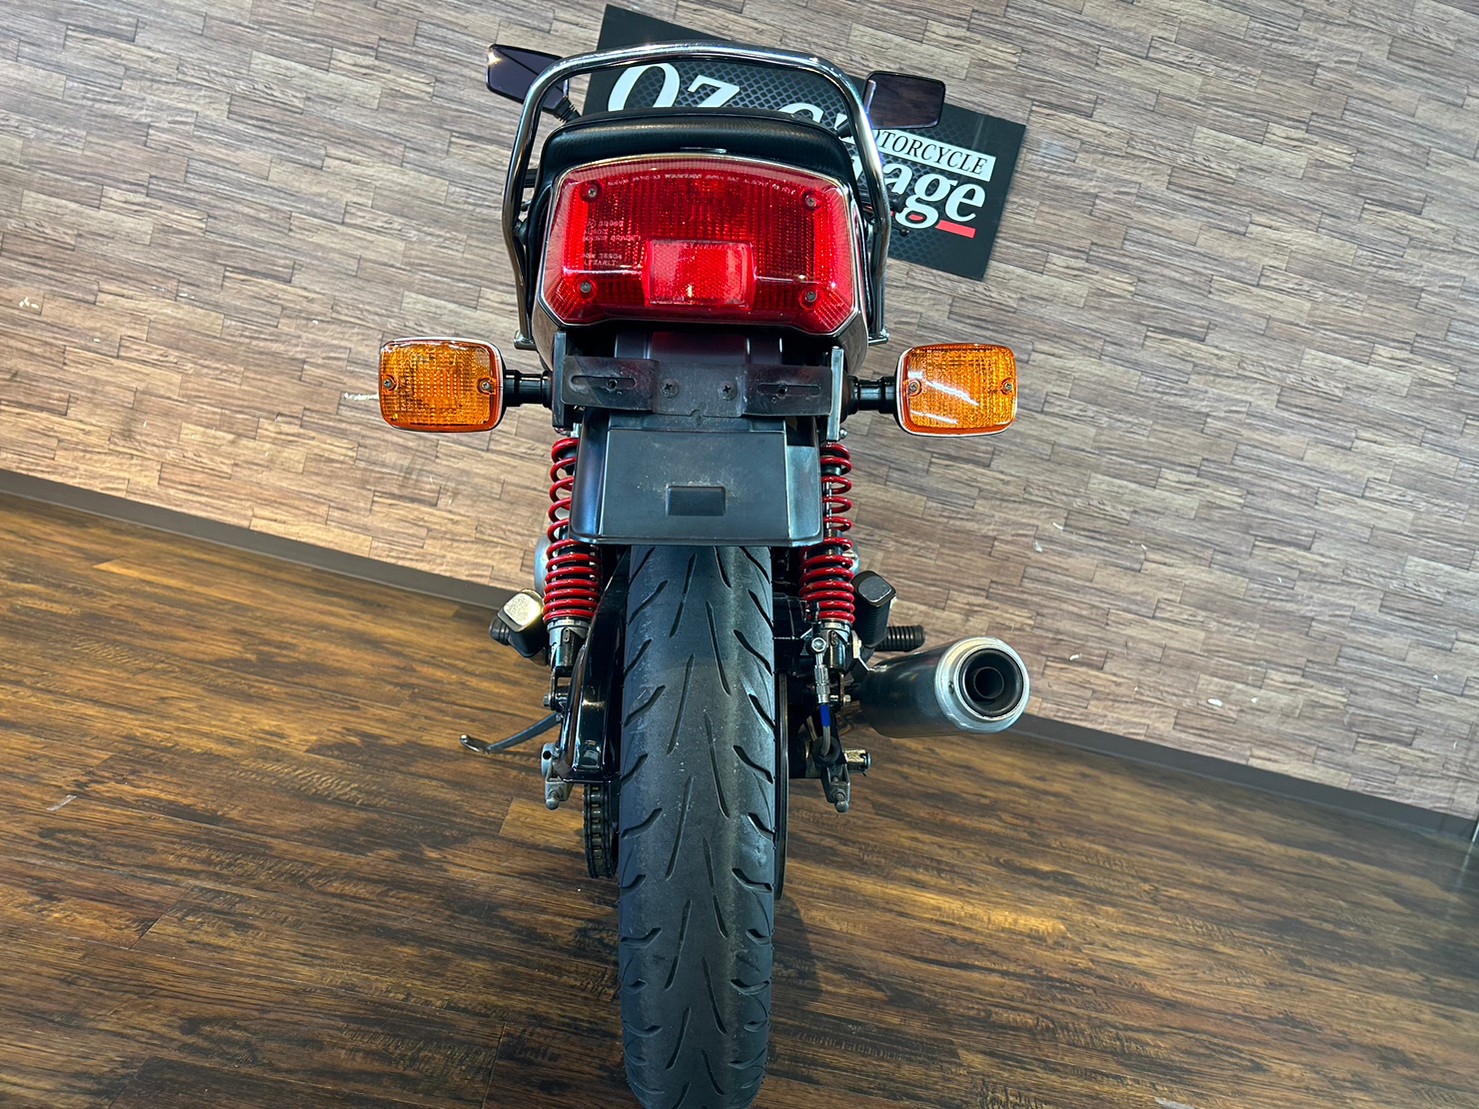 SUZUKI】 GSX750E 中古在庫 車両詳細 | MotorCycleShop OZ-Garage